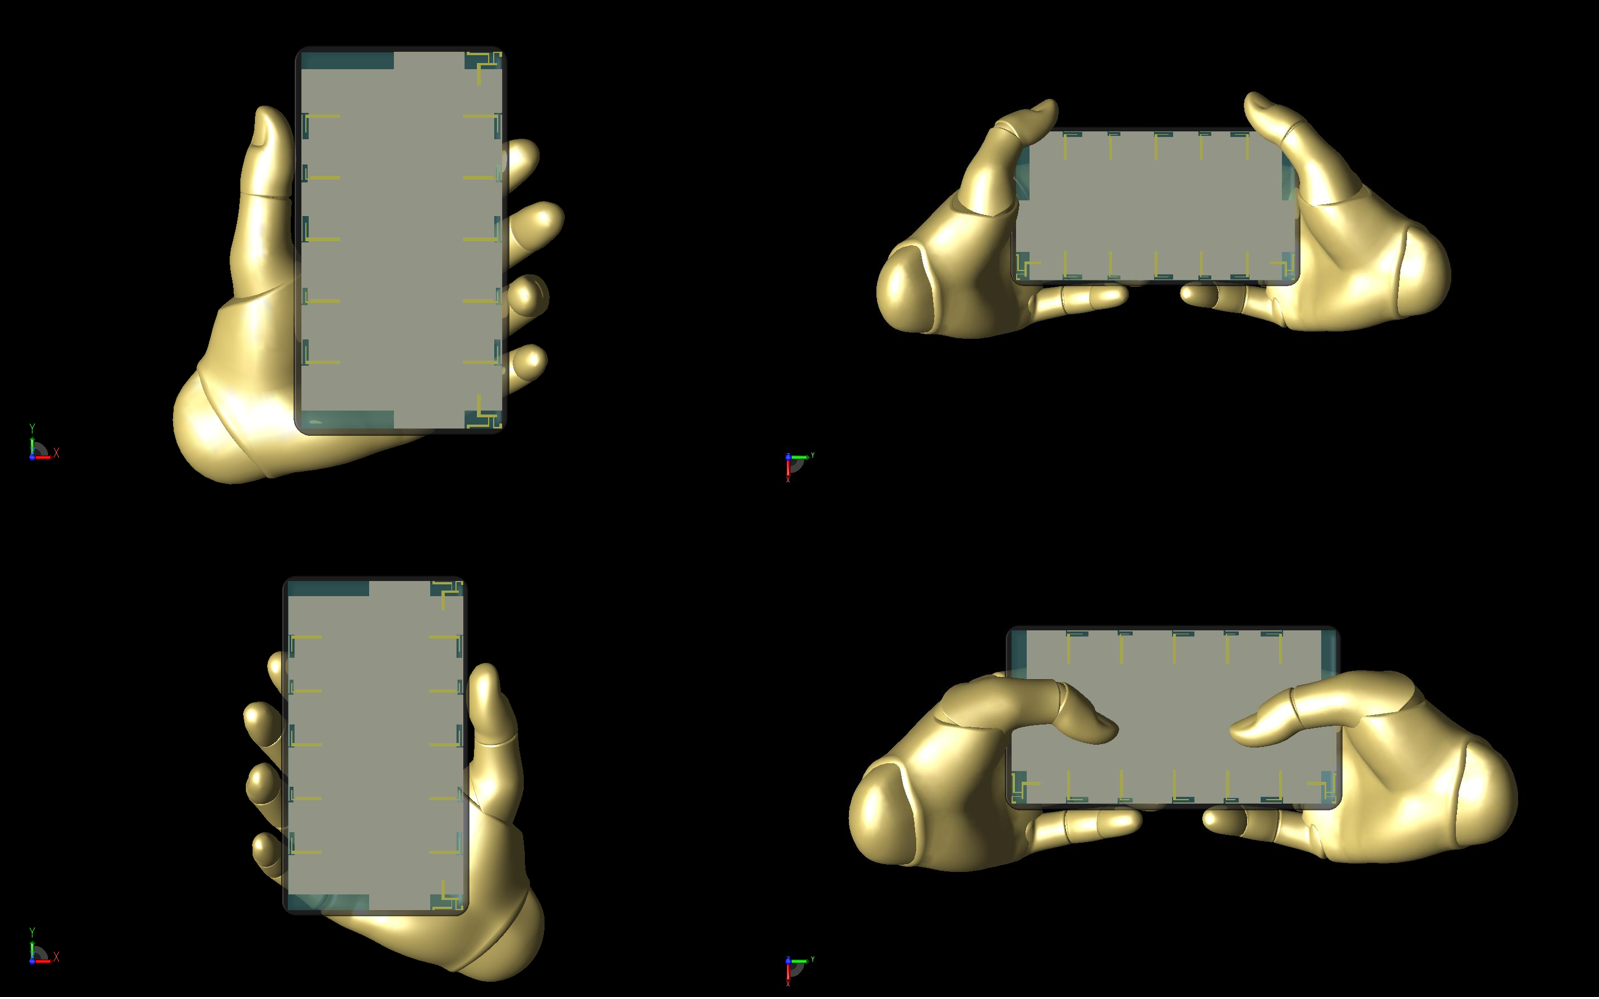 Figura 15: Se muestran las cuatro posiciones del modelo Poseable Hand utilizado en el estudio, que se posicionaron utilizando controles dentro de XFdtd. En el sentido de las agujas del reloj, desde arriba a la izquierda: mano izquierda, dos manos a los lados, dos manos escribiendo y mano derecha.